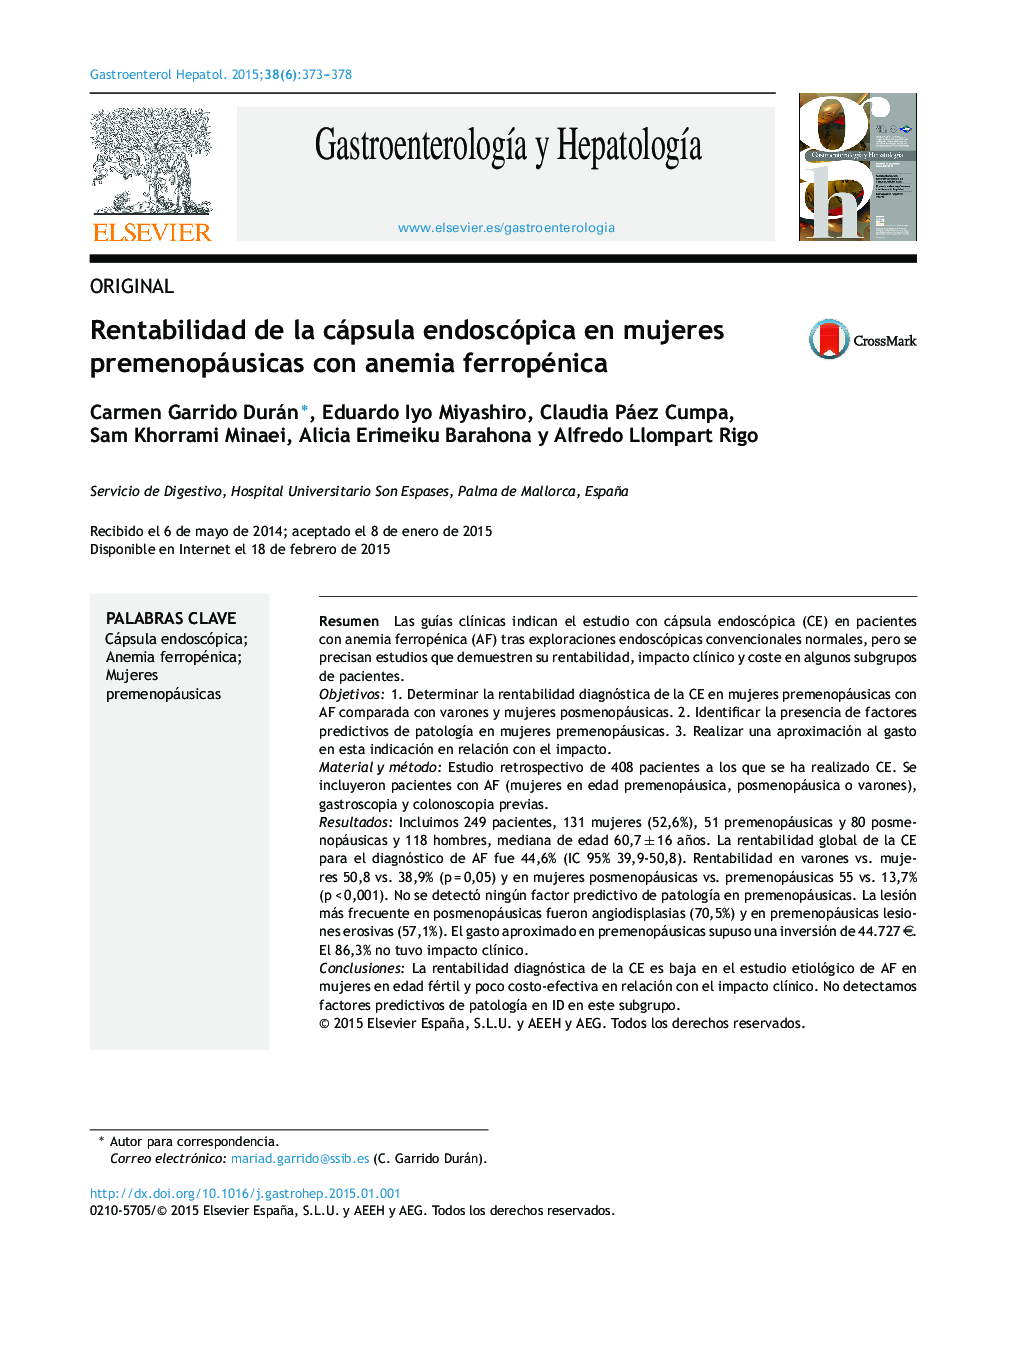 Rentabilidad de la cápsula endoscópica en mujeres premenopáusicas con anemia ferropénica